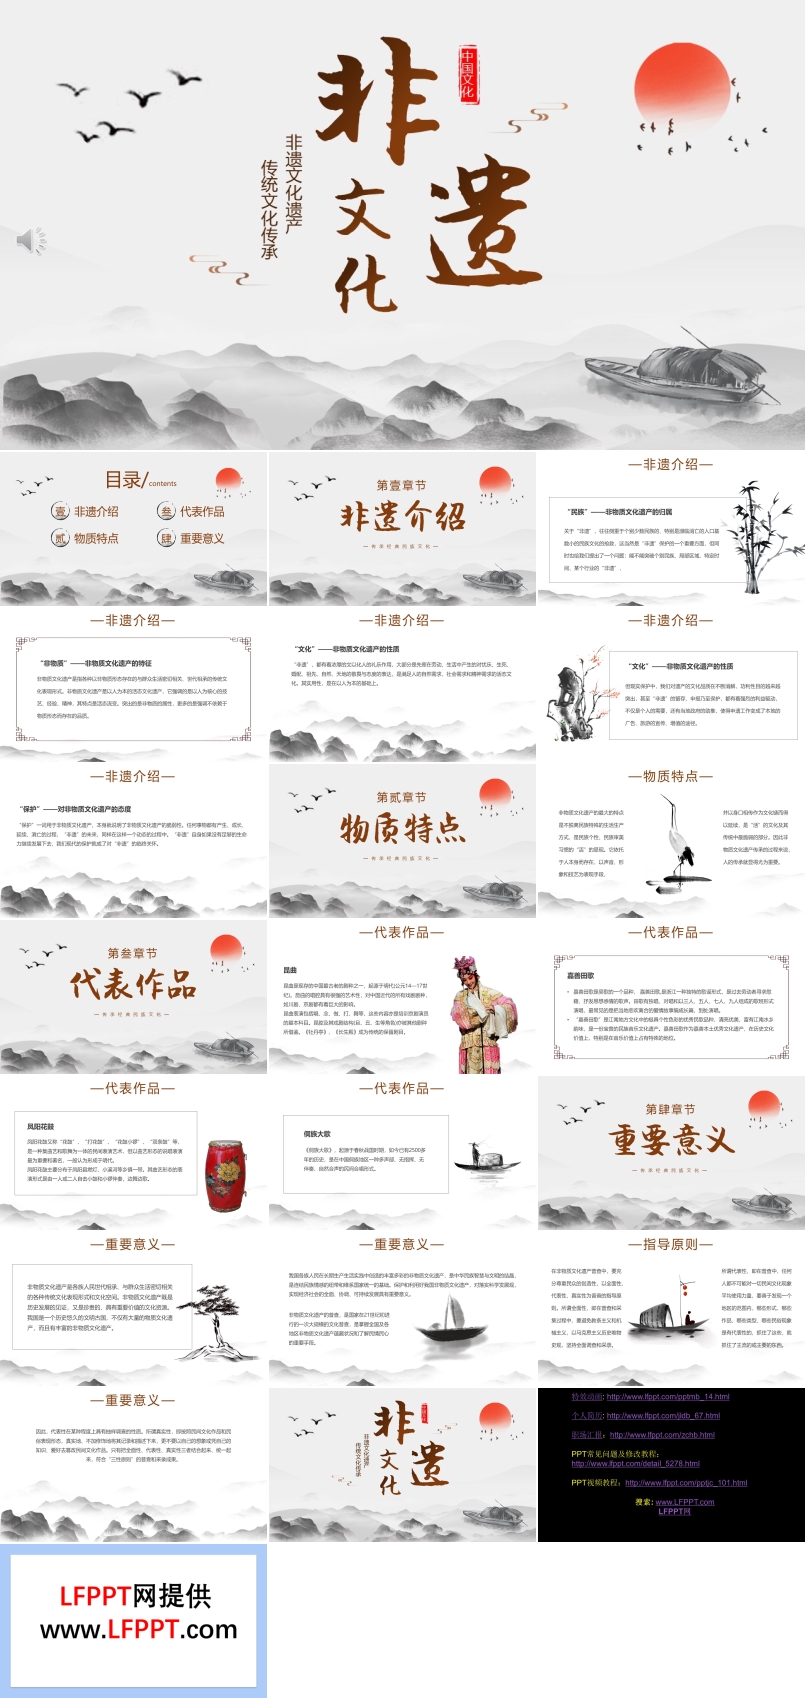 中国非遗文化传统文化介绍PPT课件模板复古中国风元素